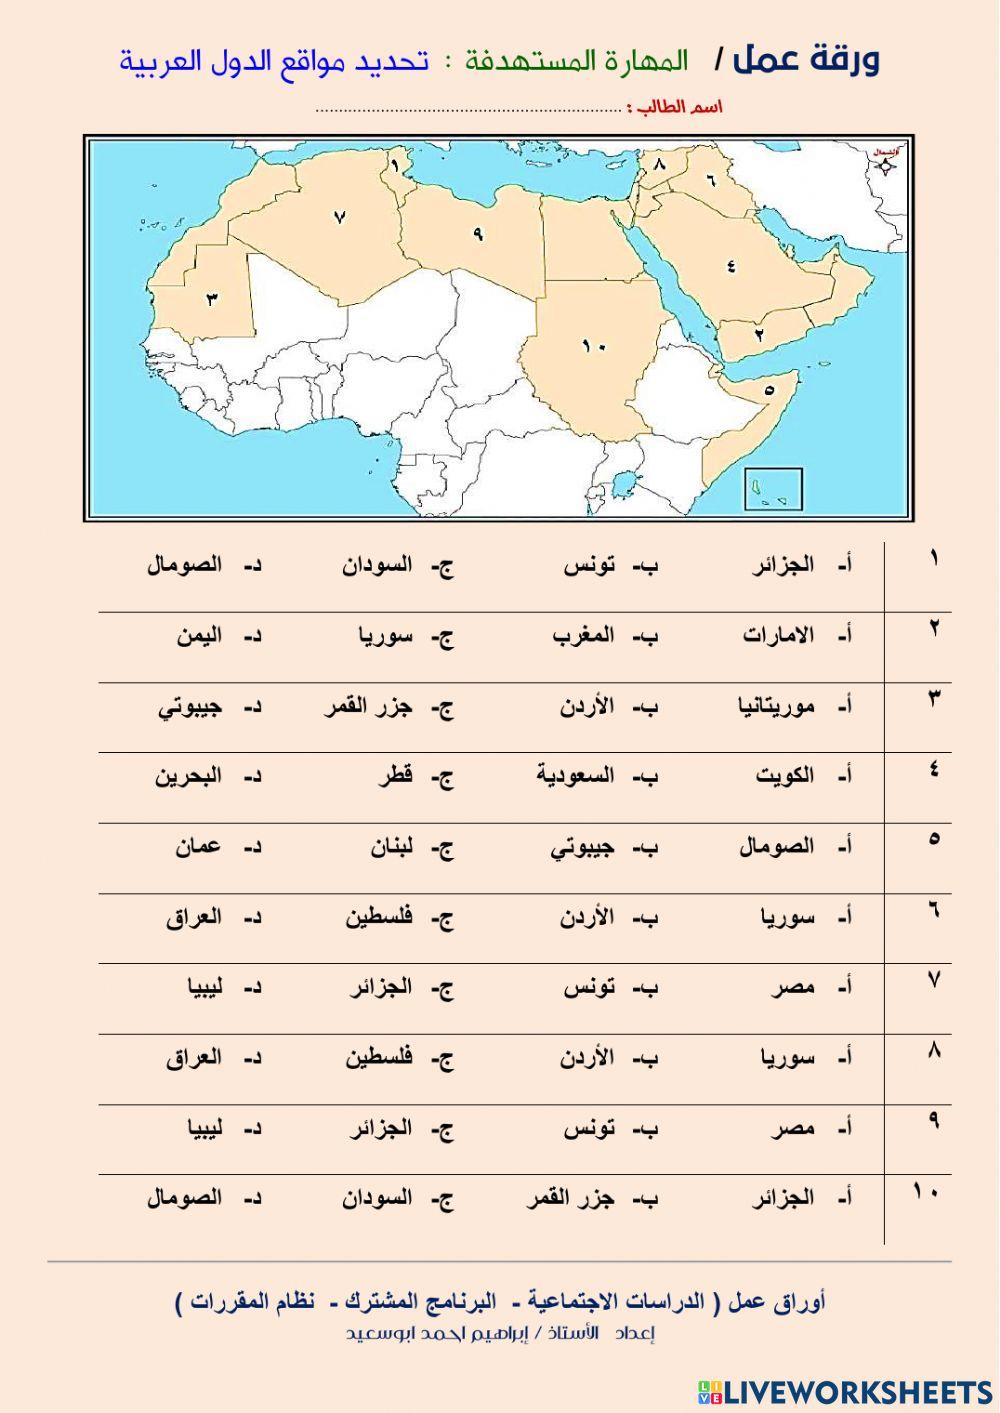 مواقع الدول العربية